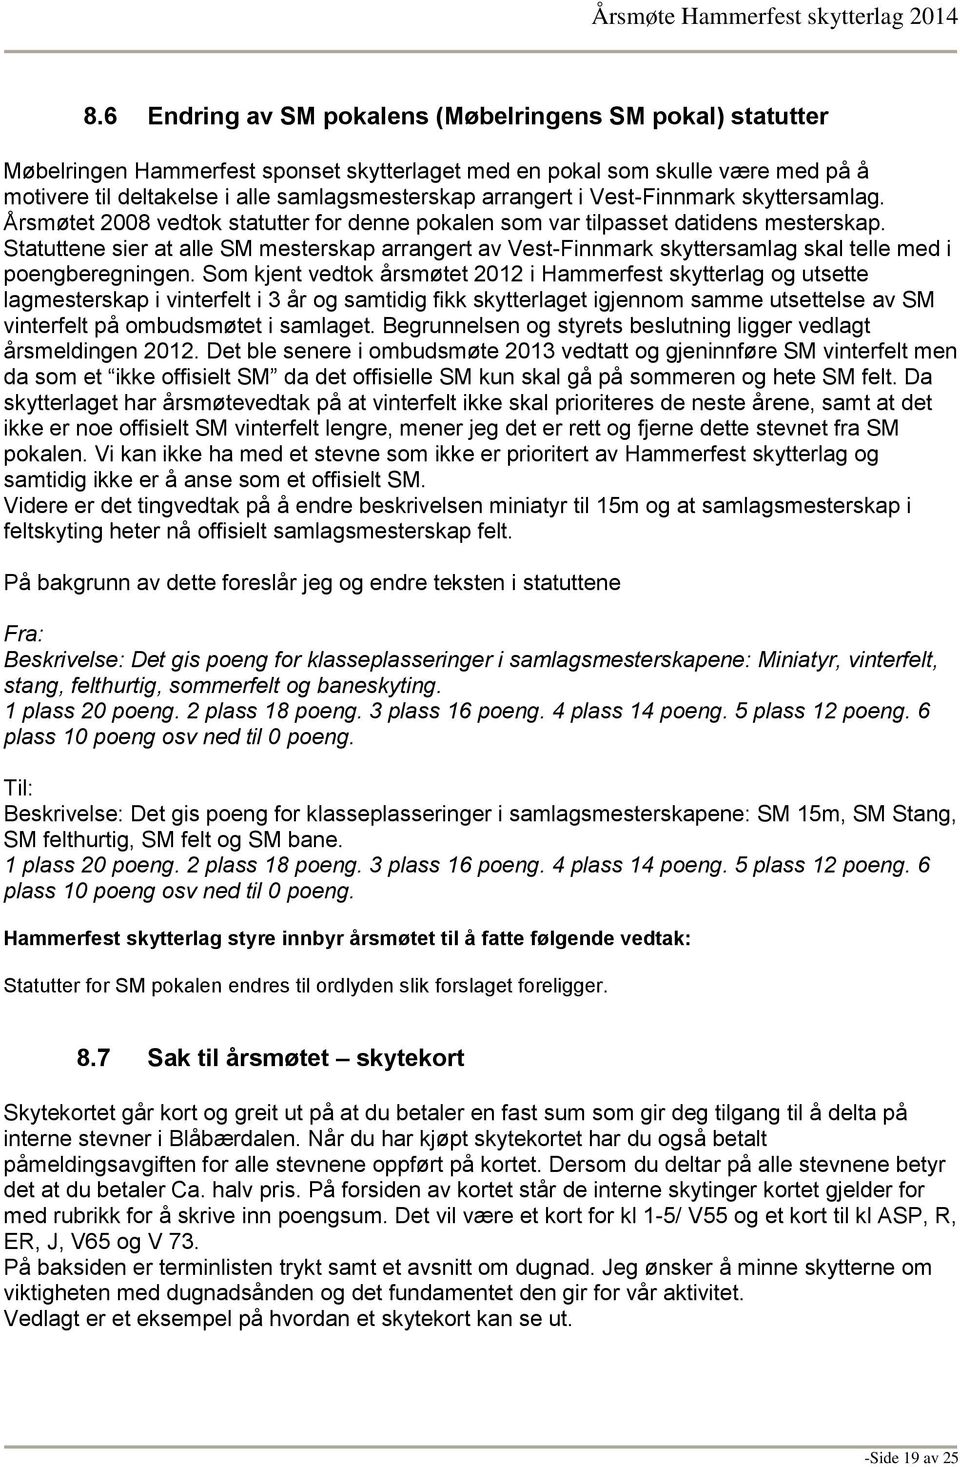 Statuttene sier at alle SM mesterskap arrangert av Vest-Finnmark skyttersamlag skal telle med i poengberegningen.